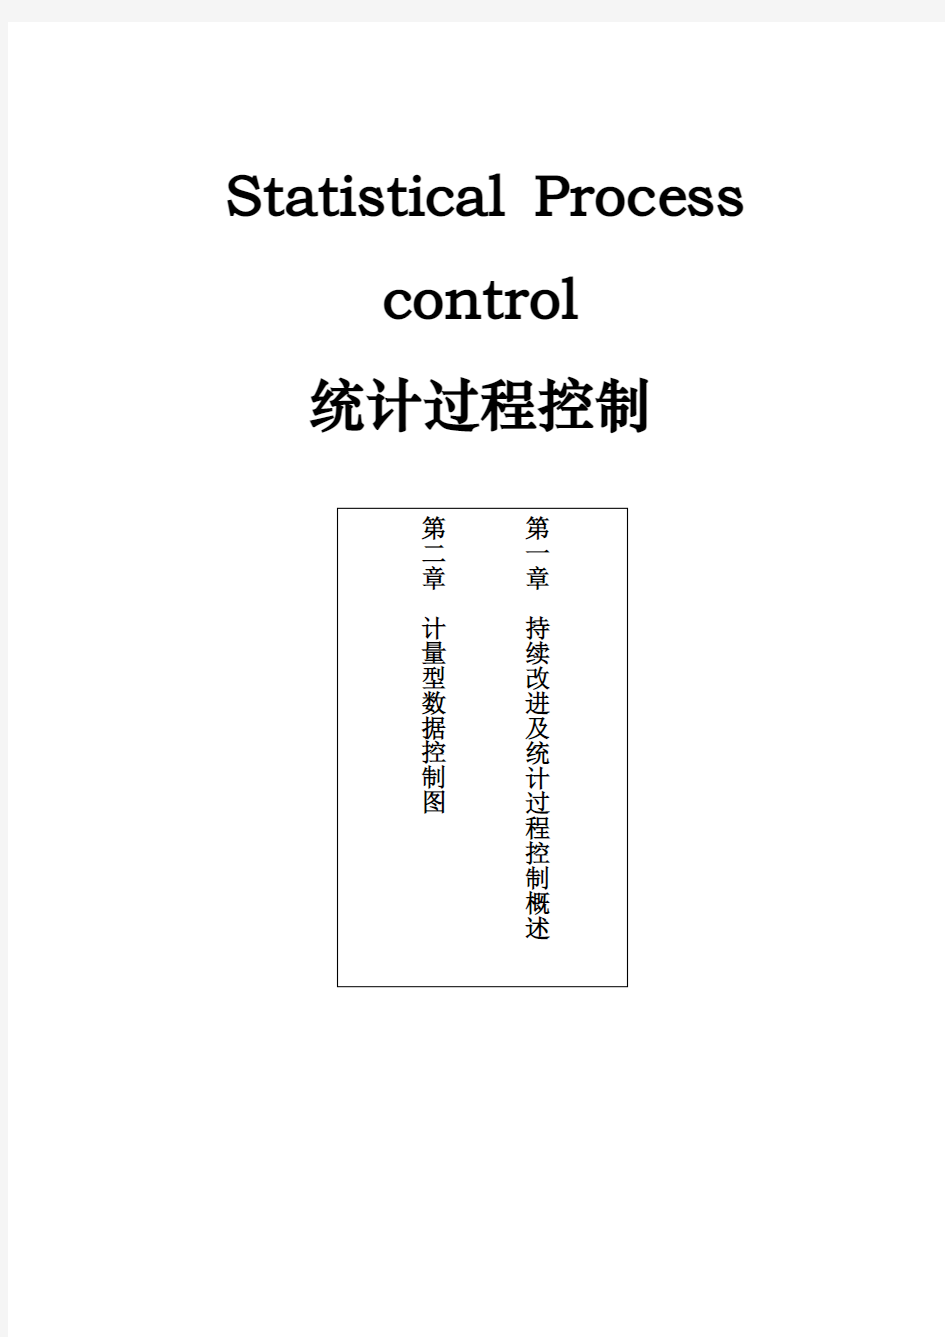 SPC统计过程控制与控制图